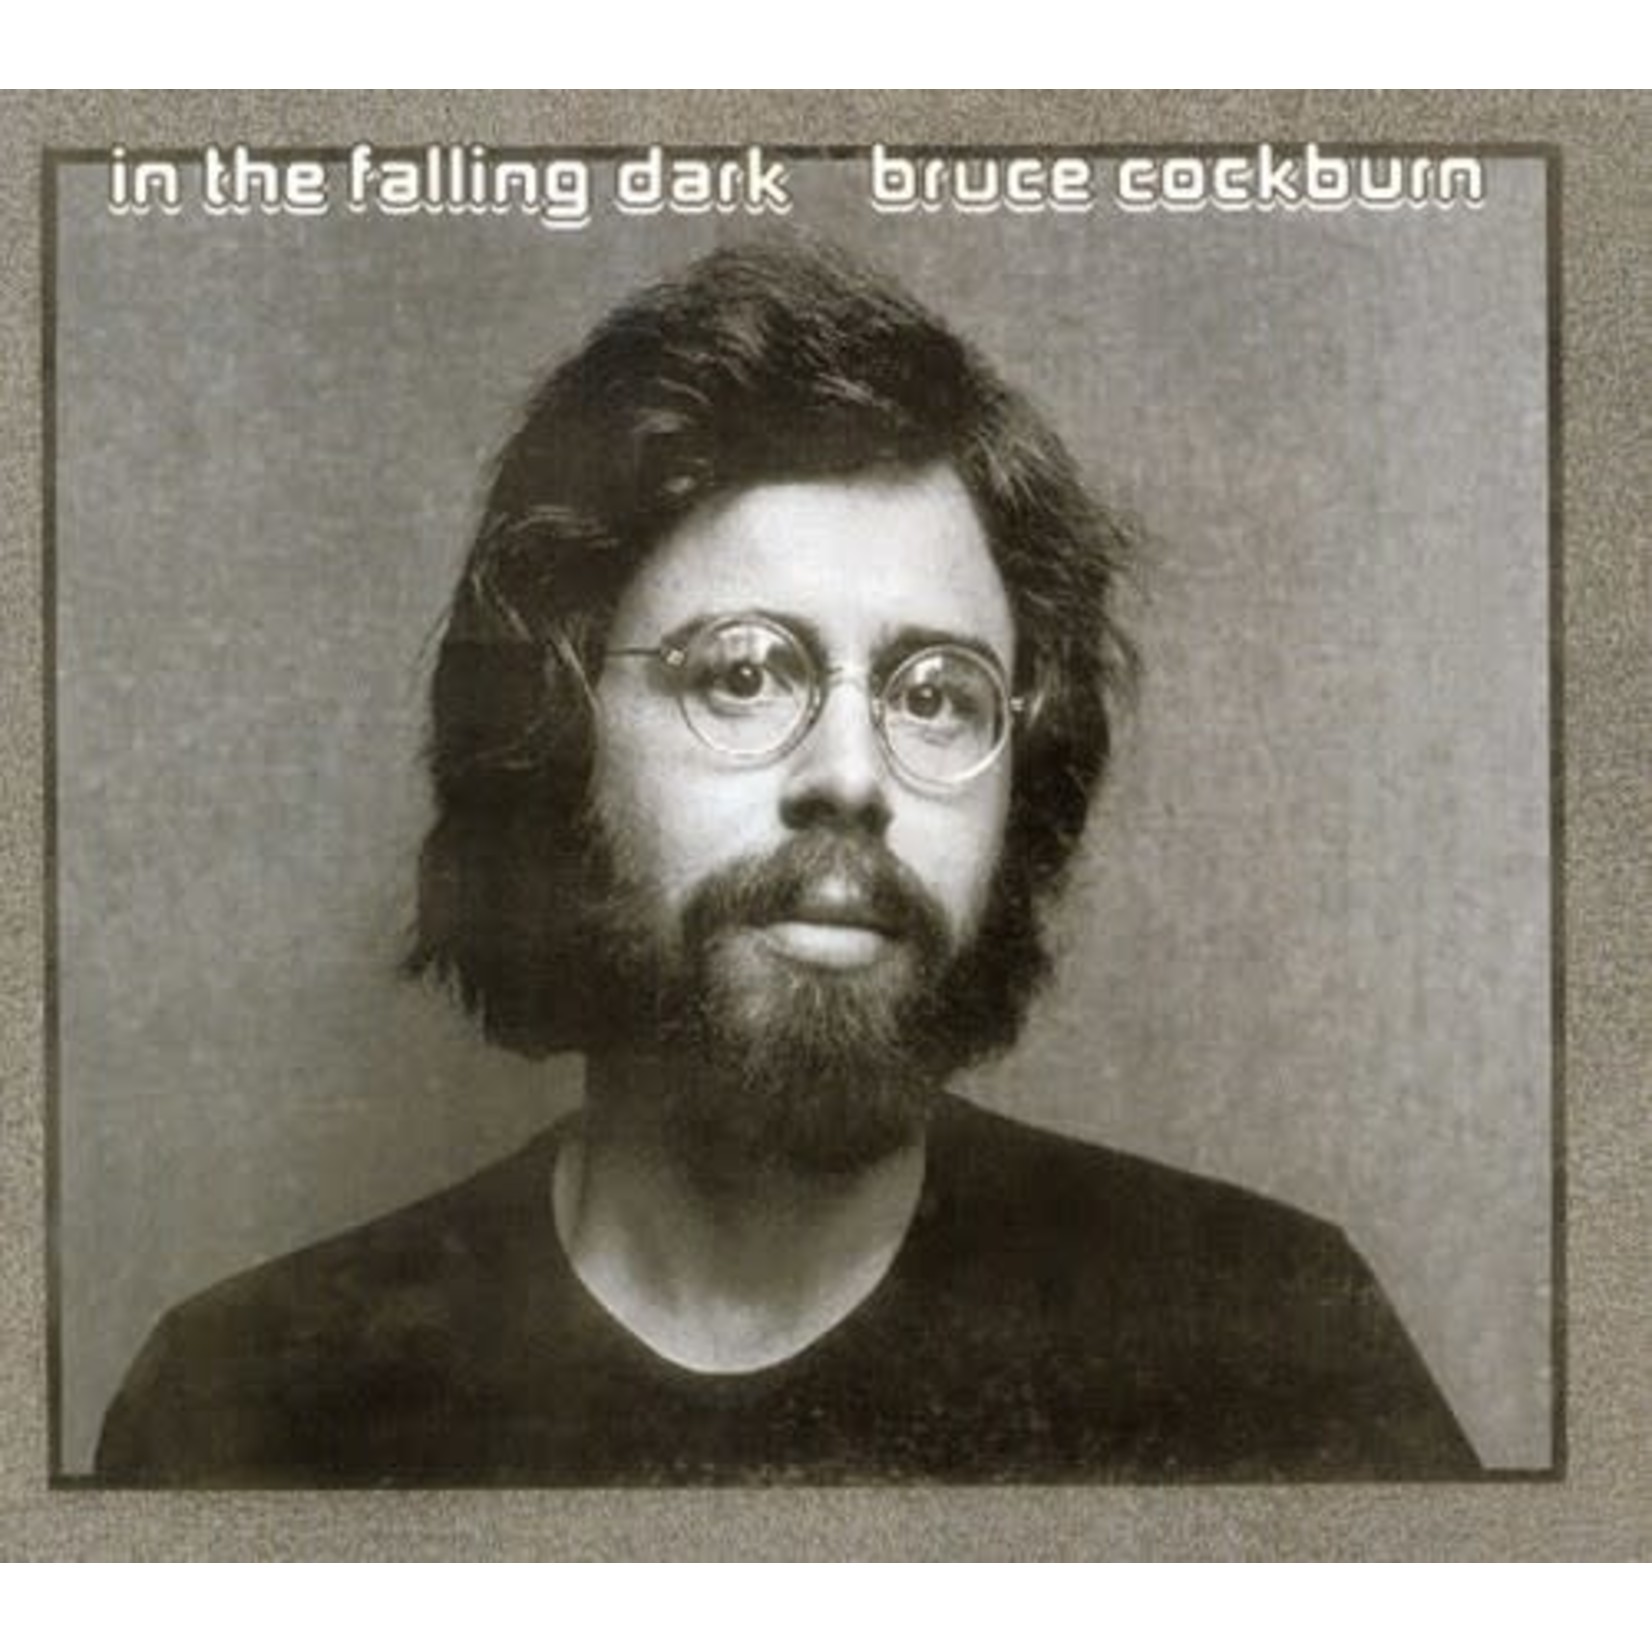 Bruce Cockburn - In The Falling Dark [USED CD]